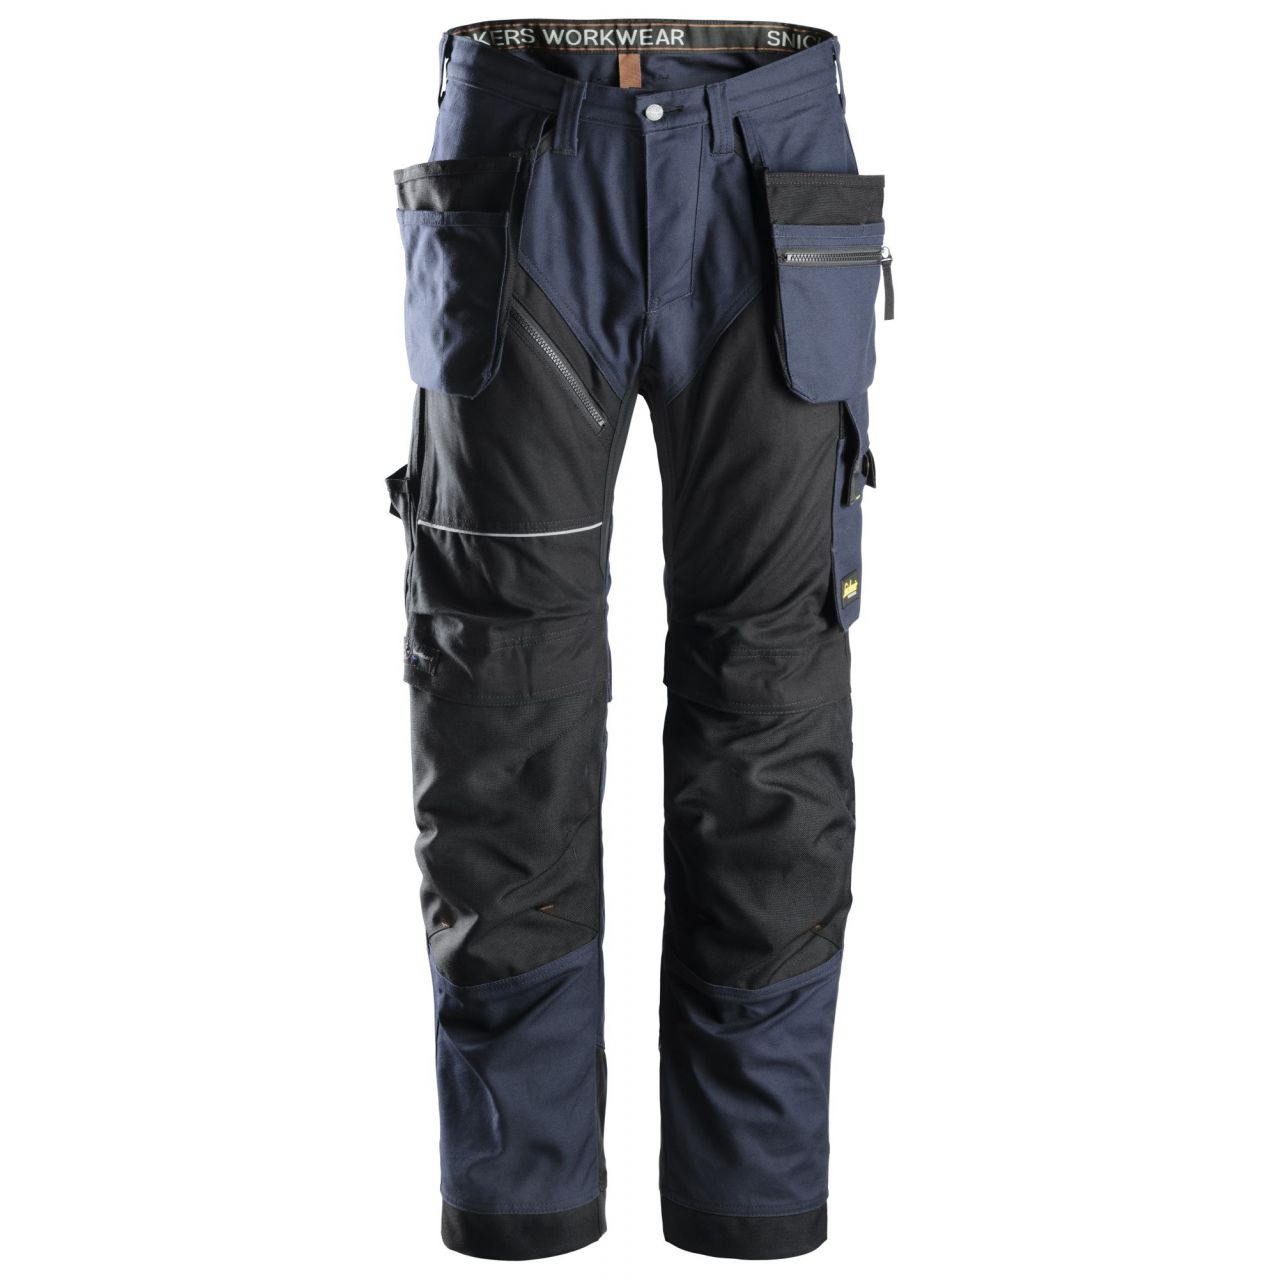 6215 Pantalón largo RuffWork Algodón con bolsillos flotantes azul marino-negro talla 162